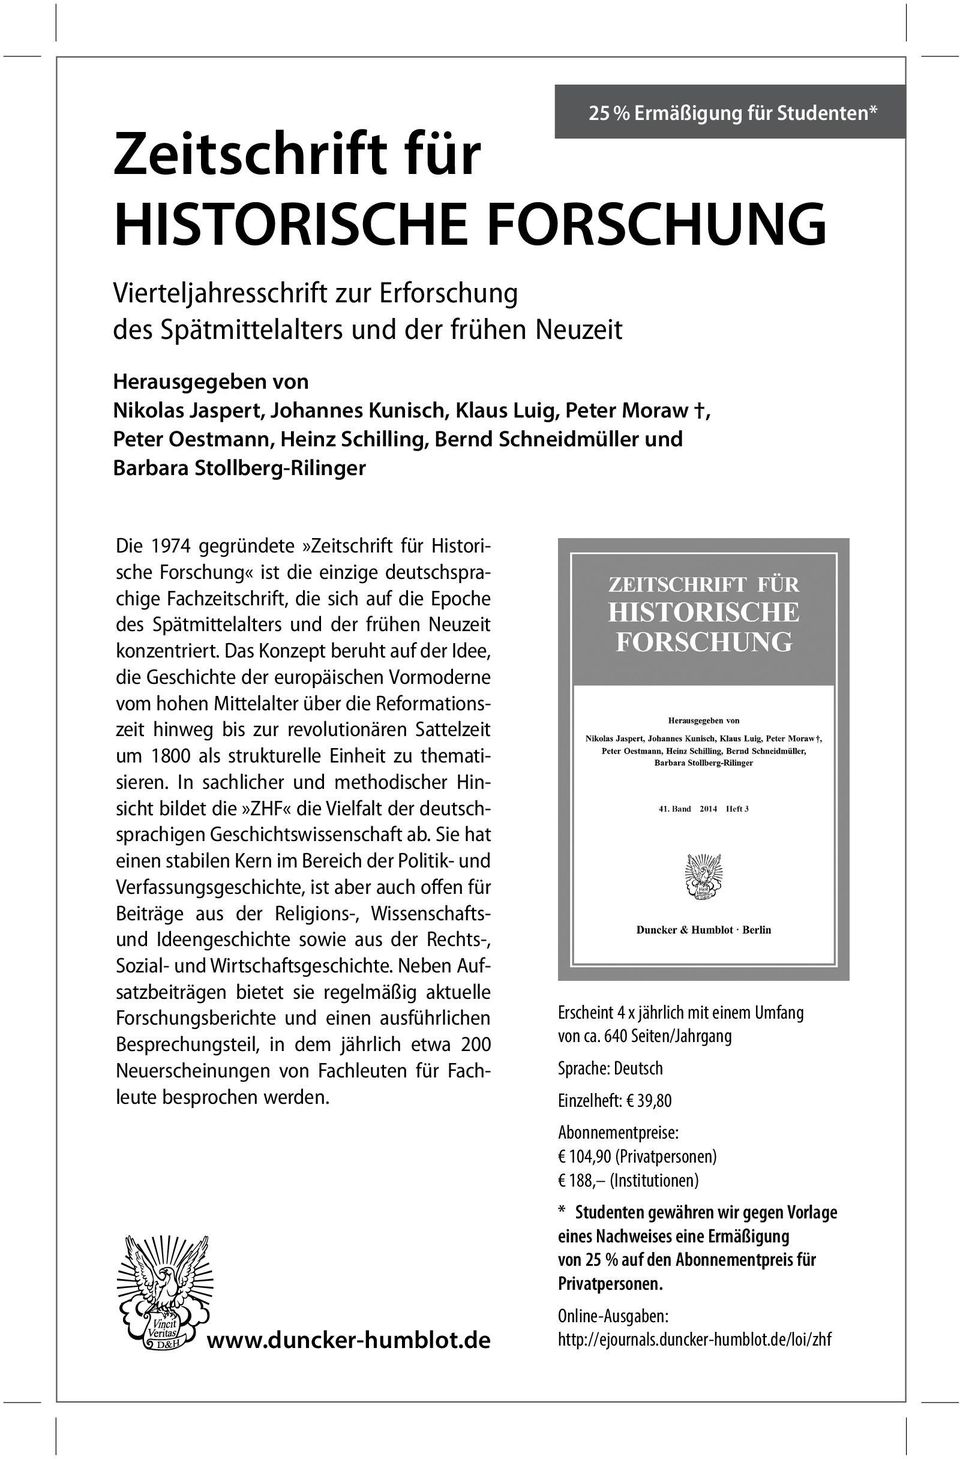 deutschsprachige Fachzeitschrift, die sich auf die Epoche des Spätmittelalters und der frühen Neuzeit konzentriert.